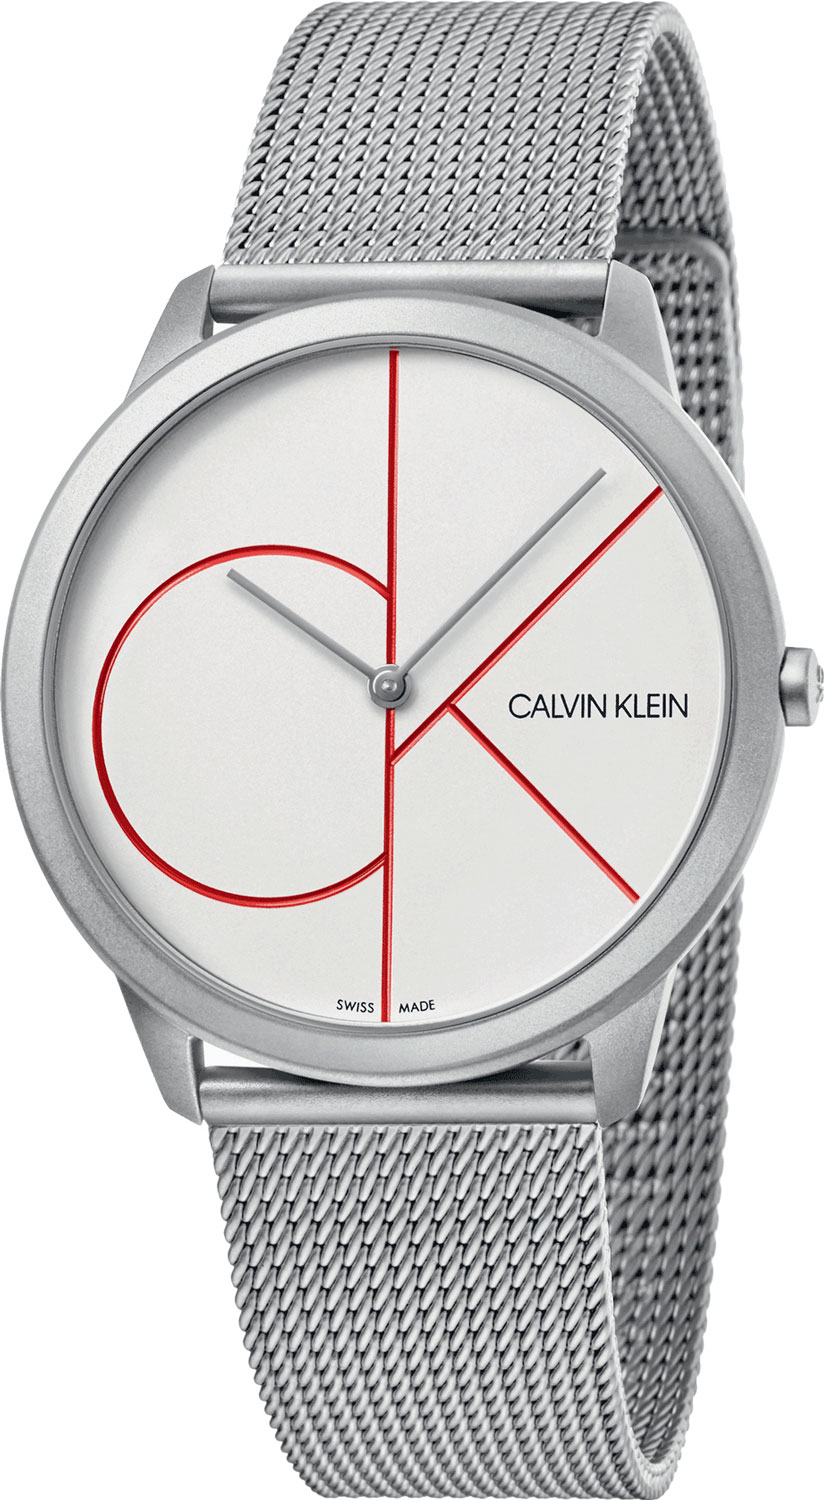 Швейцарские наручные часы Calvin Klein K3M51152